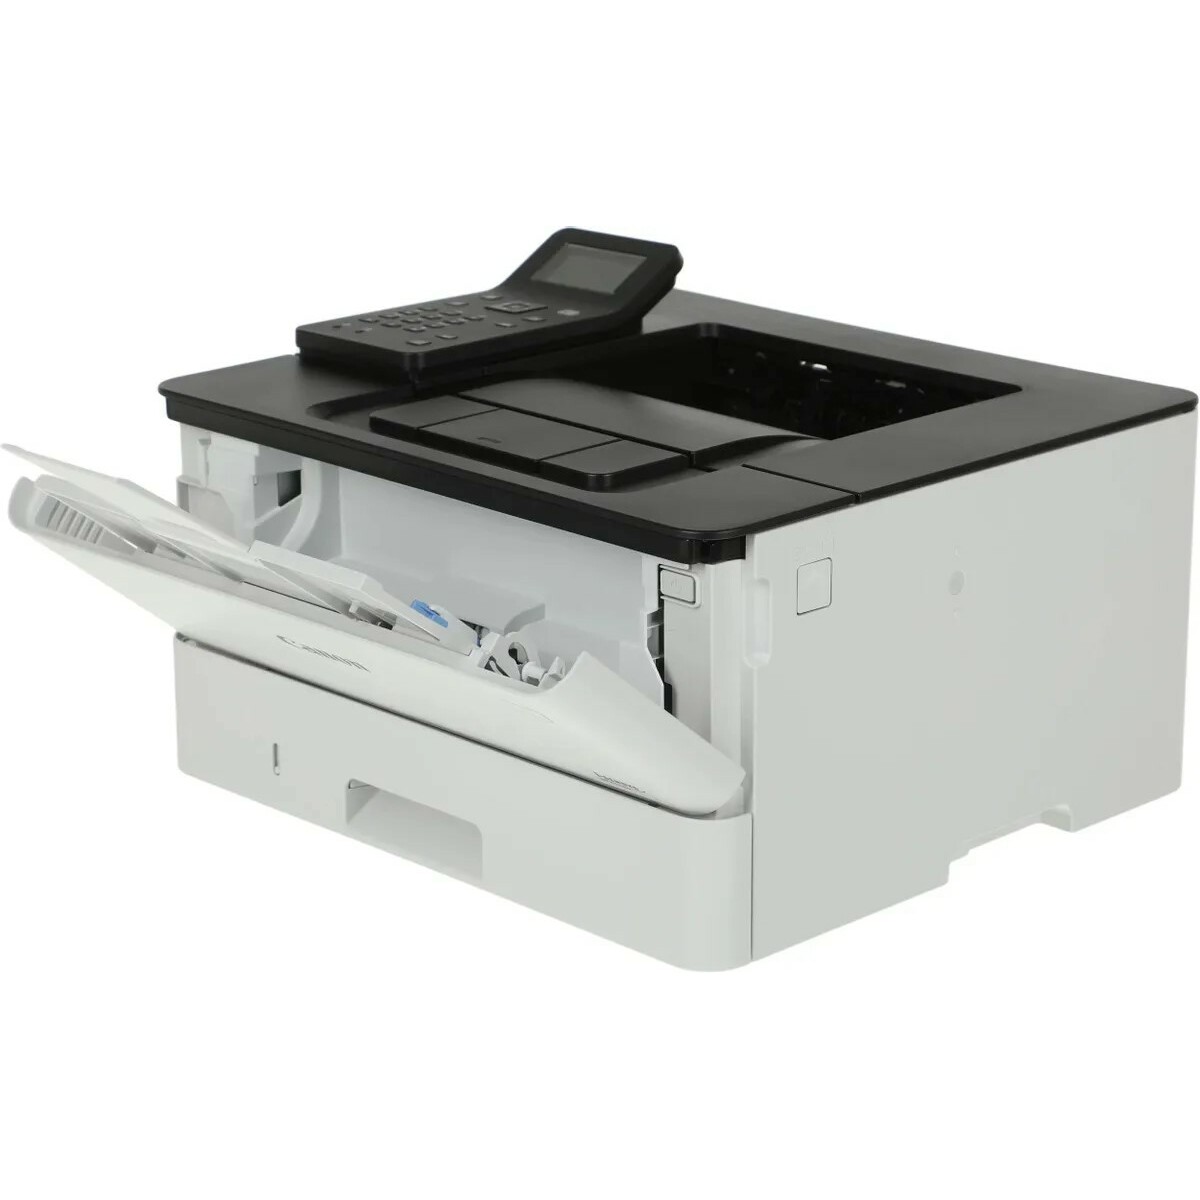 Принтер лазерный Canon i-Sensys LBP233dw, белый